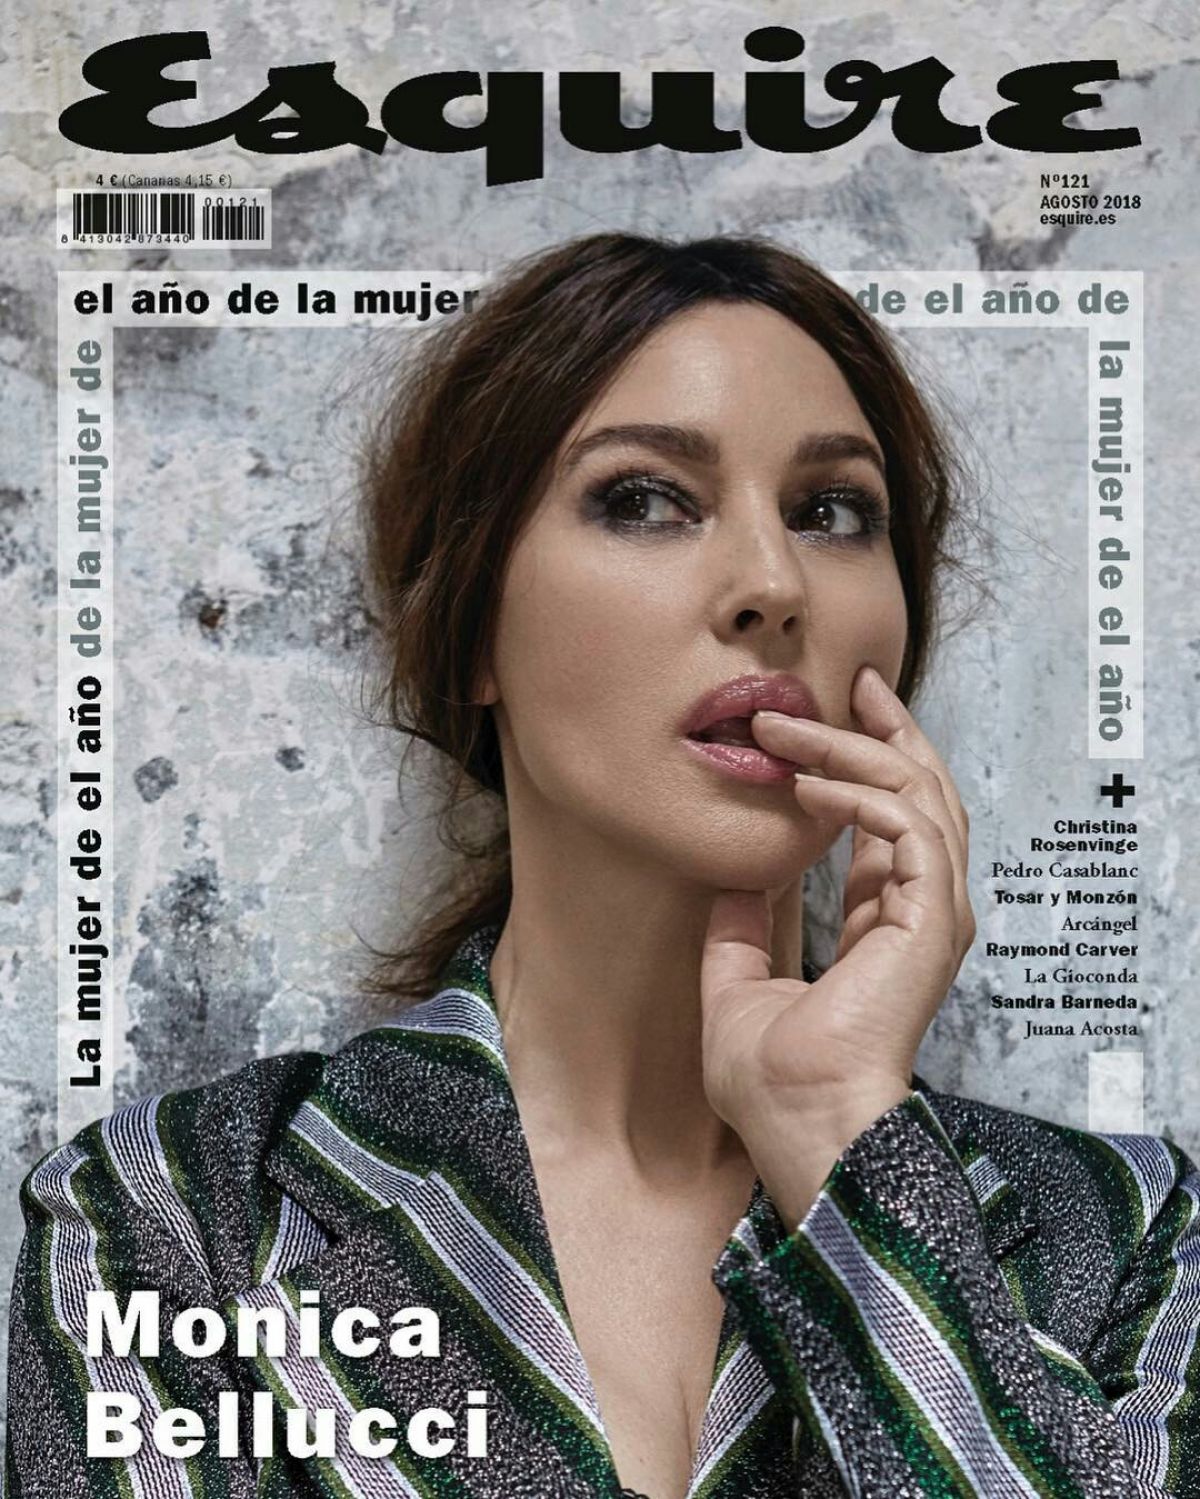 مونيكا بيلوتشى على أغلفة المجلات